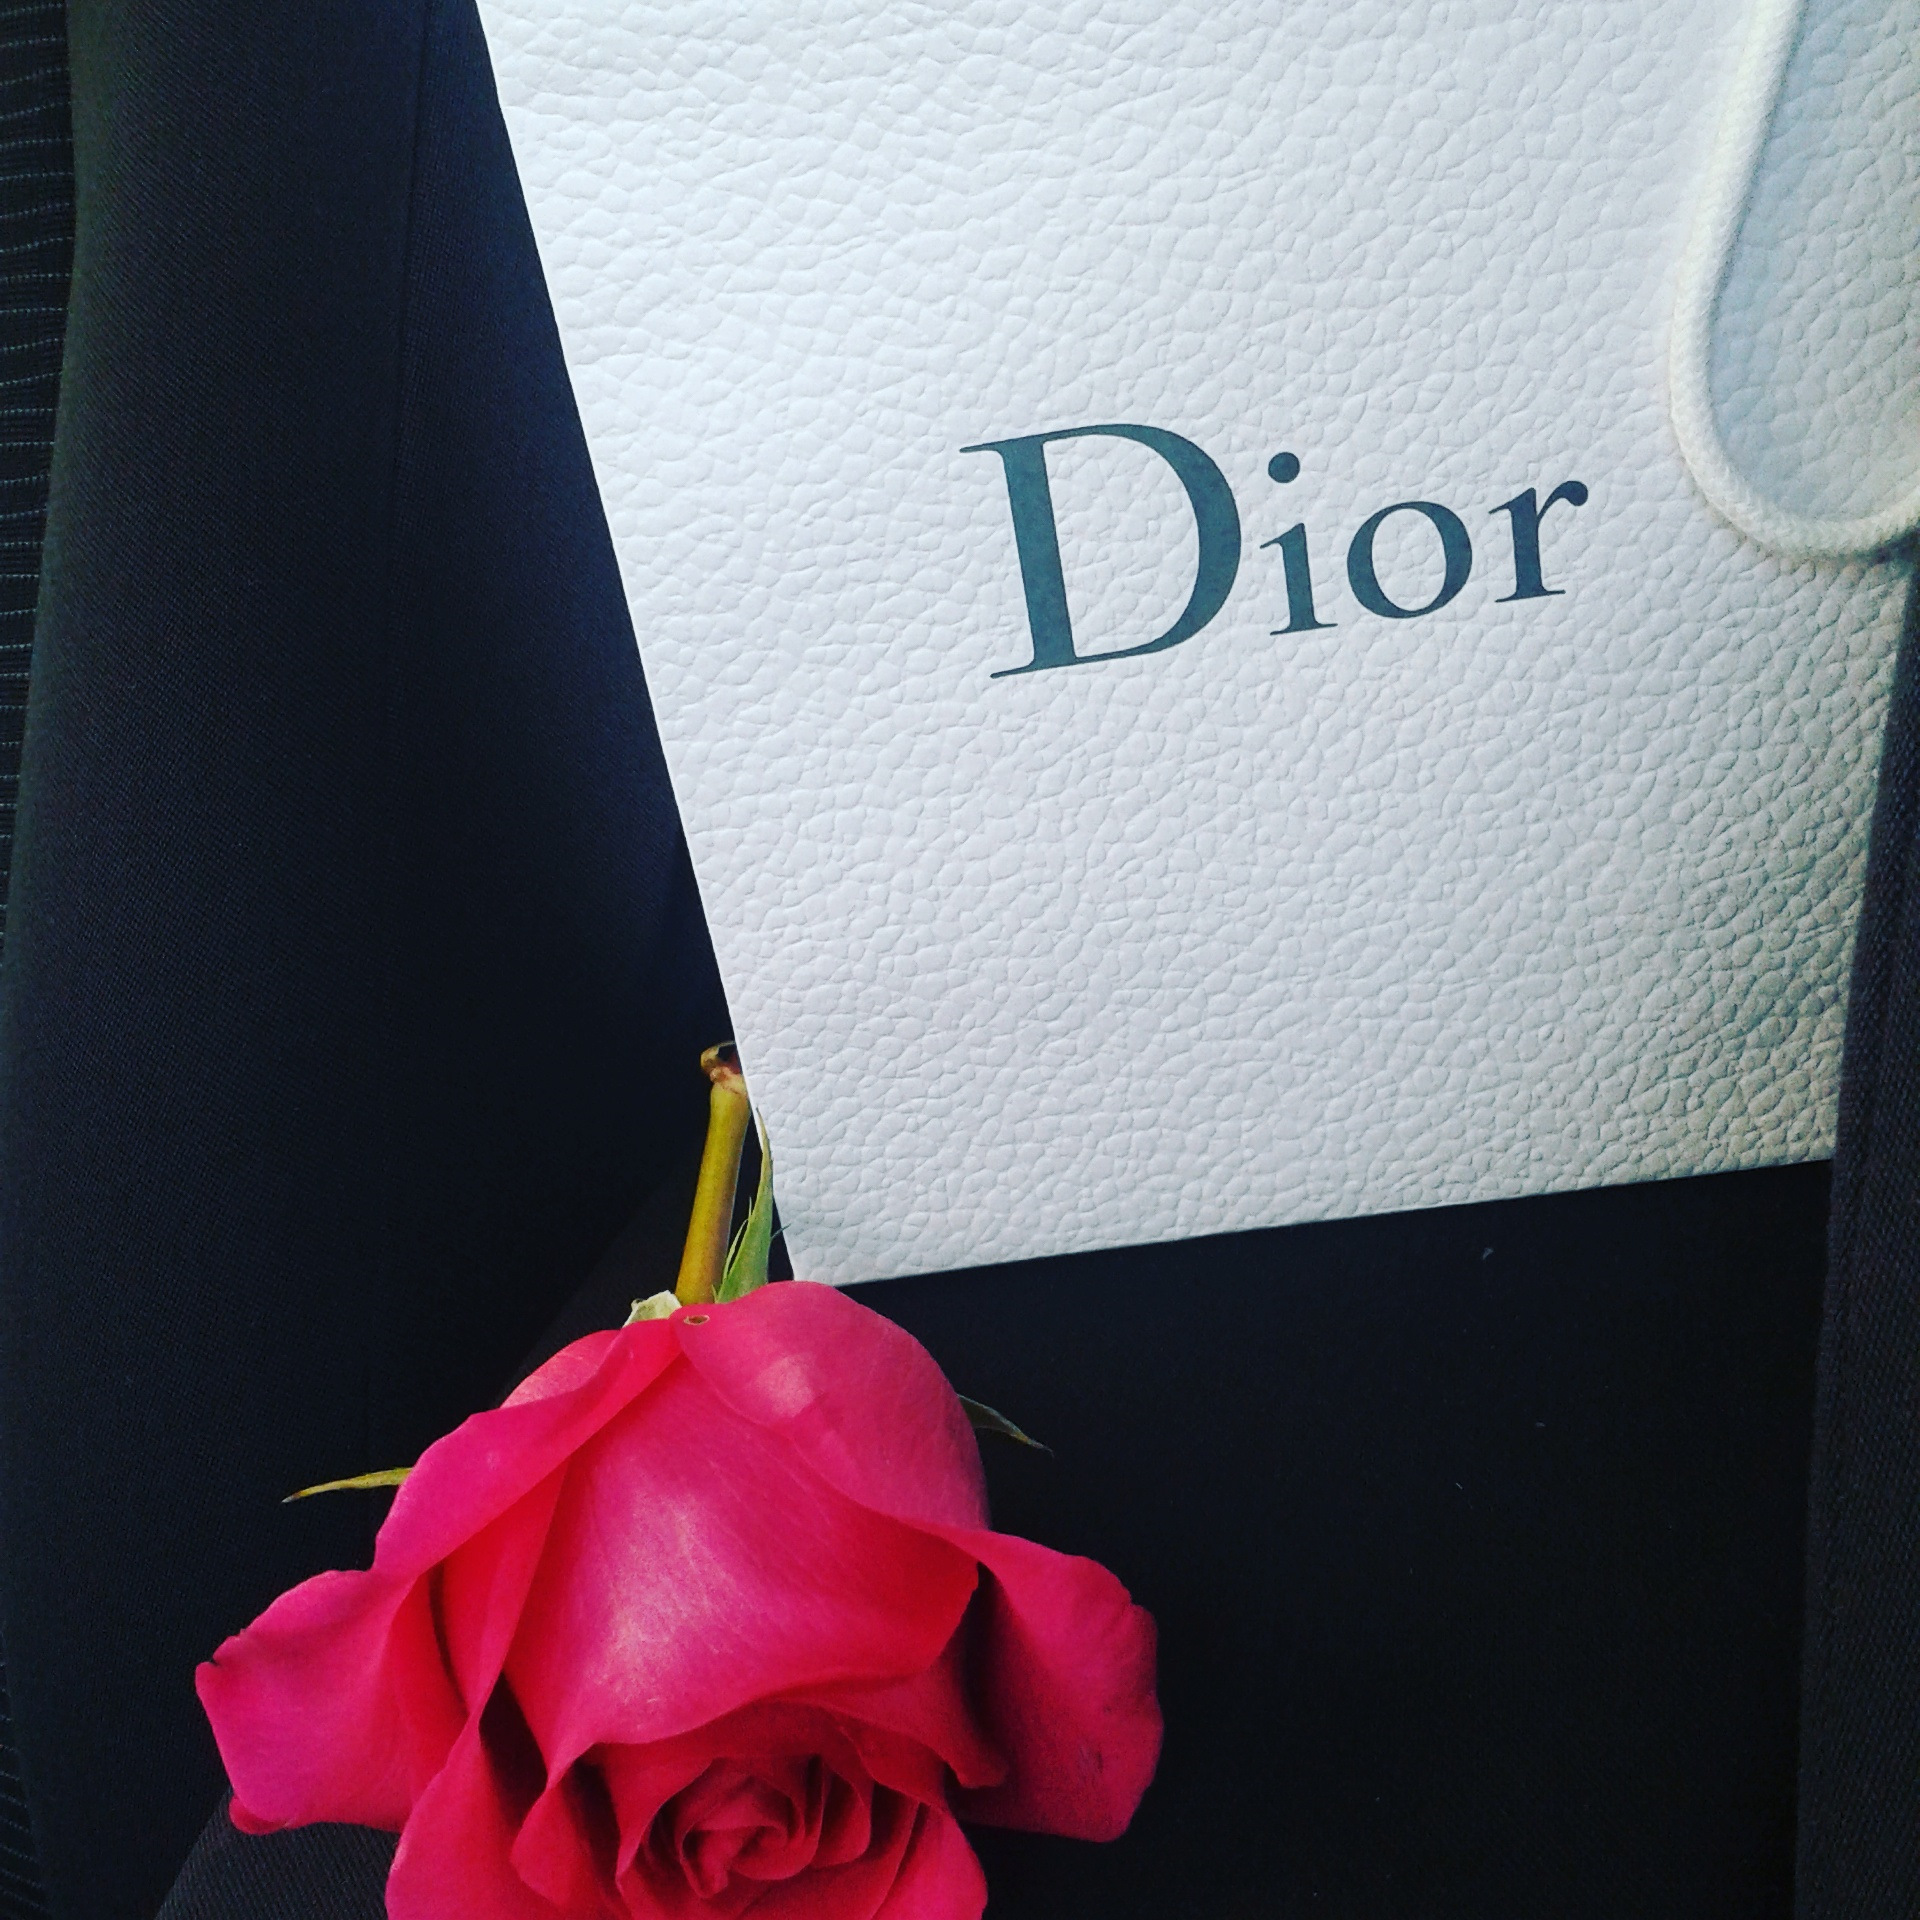 День марки Dior…как же это прекрасно! 